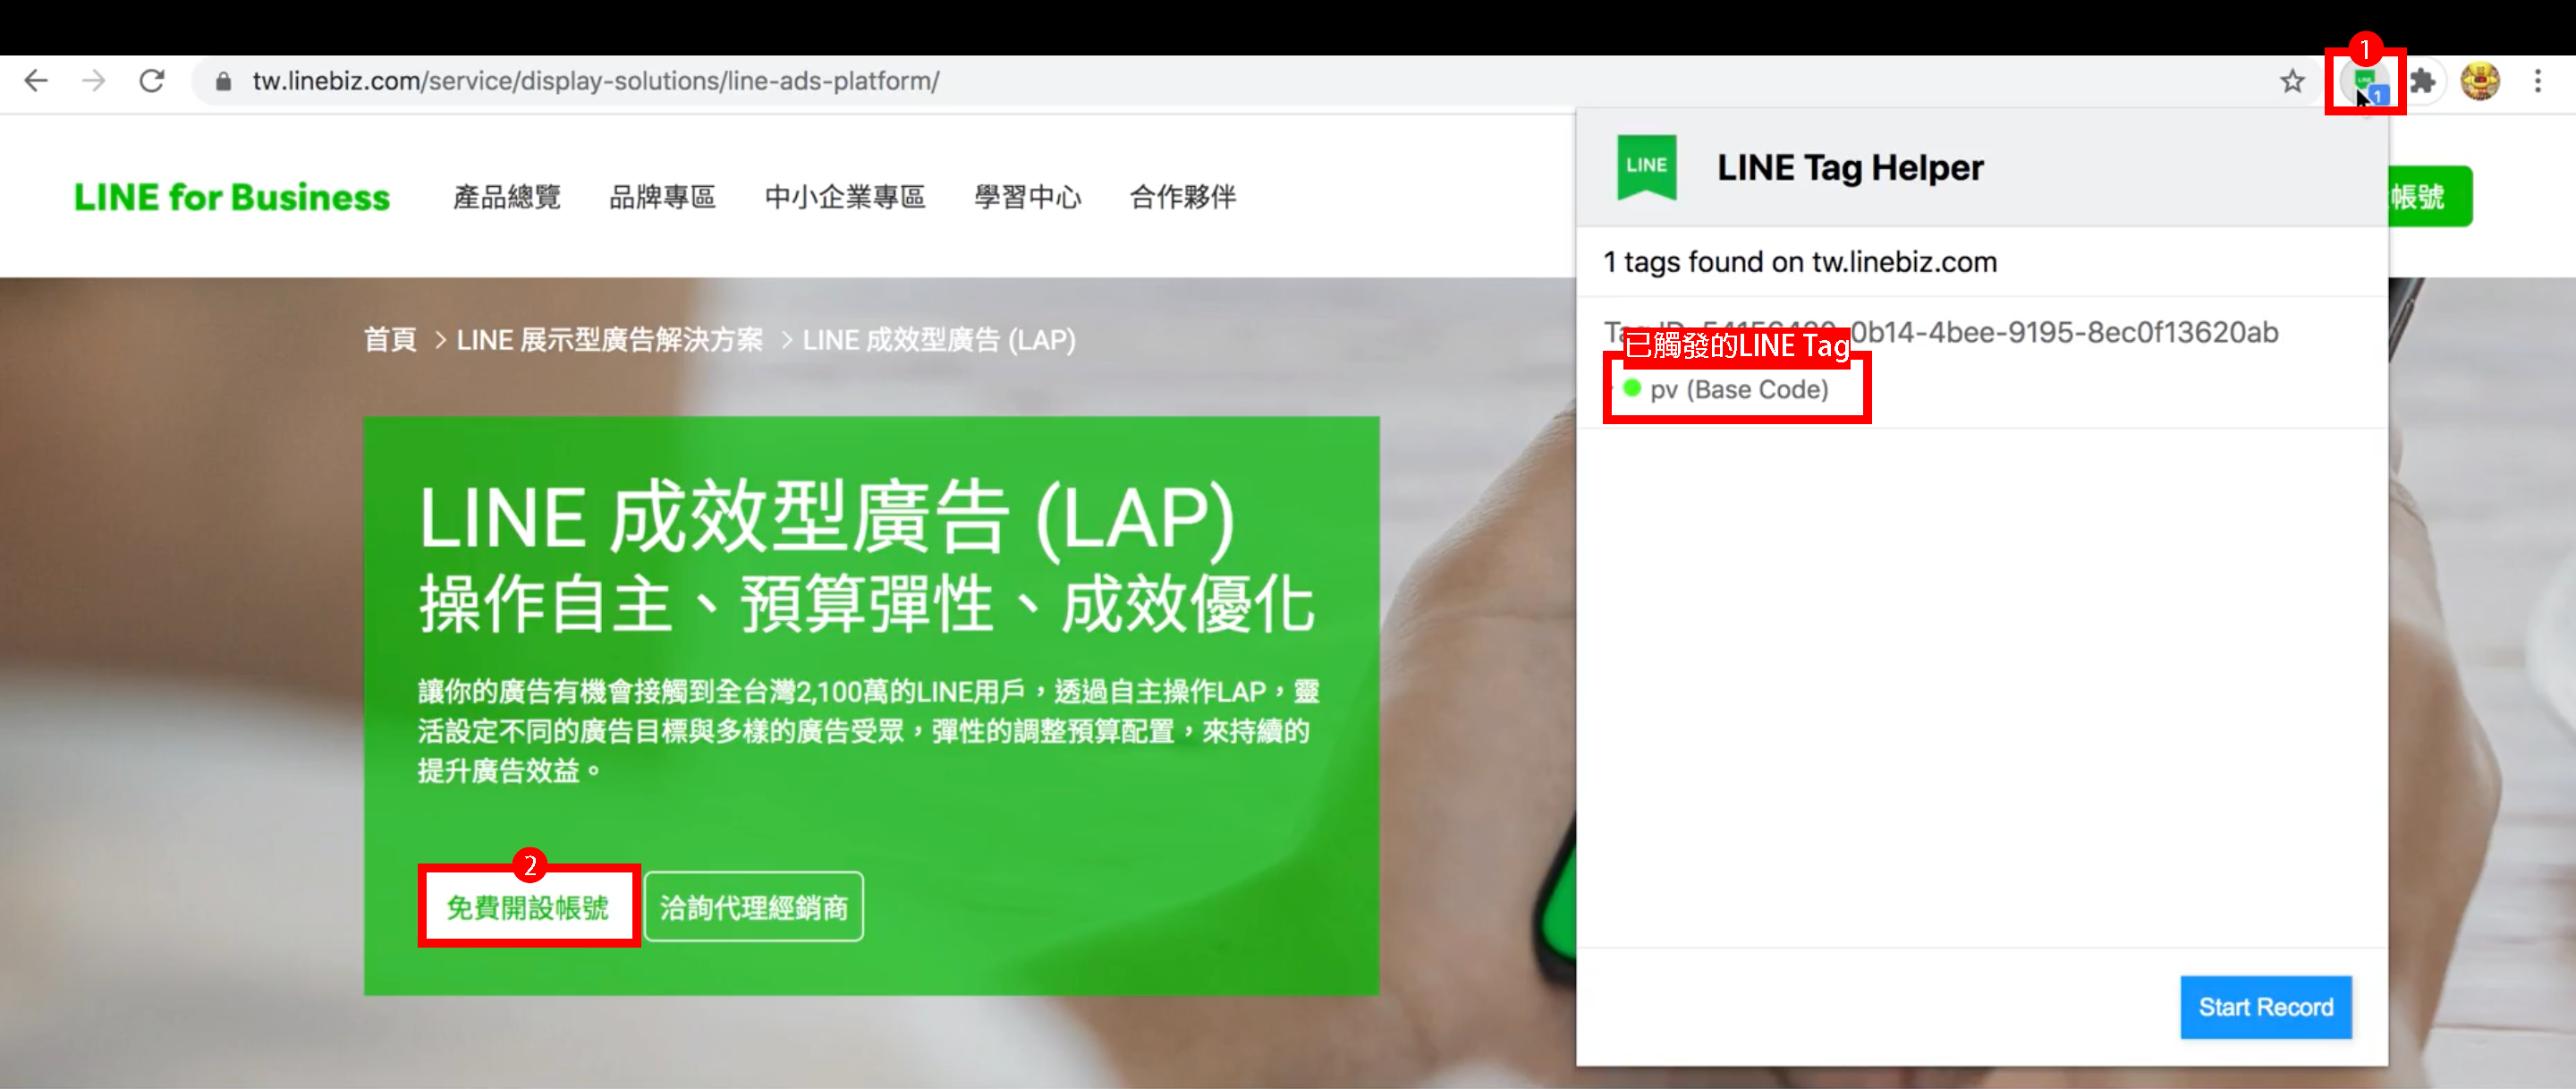 在網頁上點擊按鈕後，打開 LINE Tag Helper 來確認動作是否有觸發所安裝的 LINE Tag。